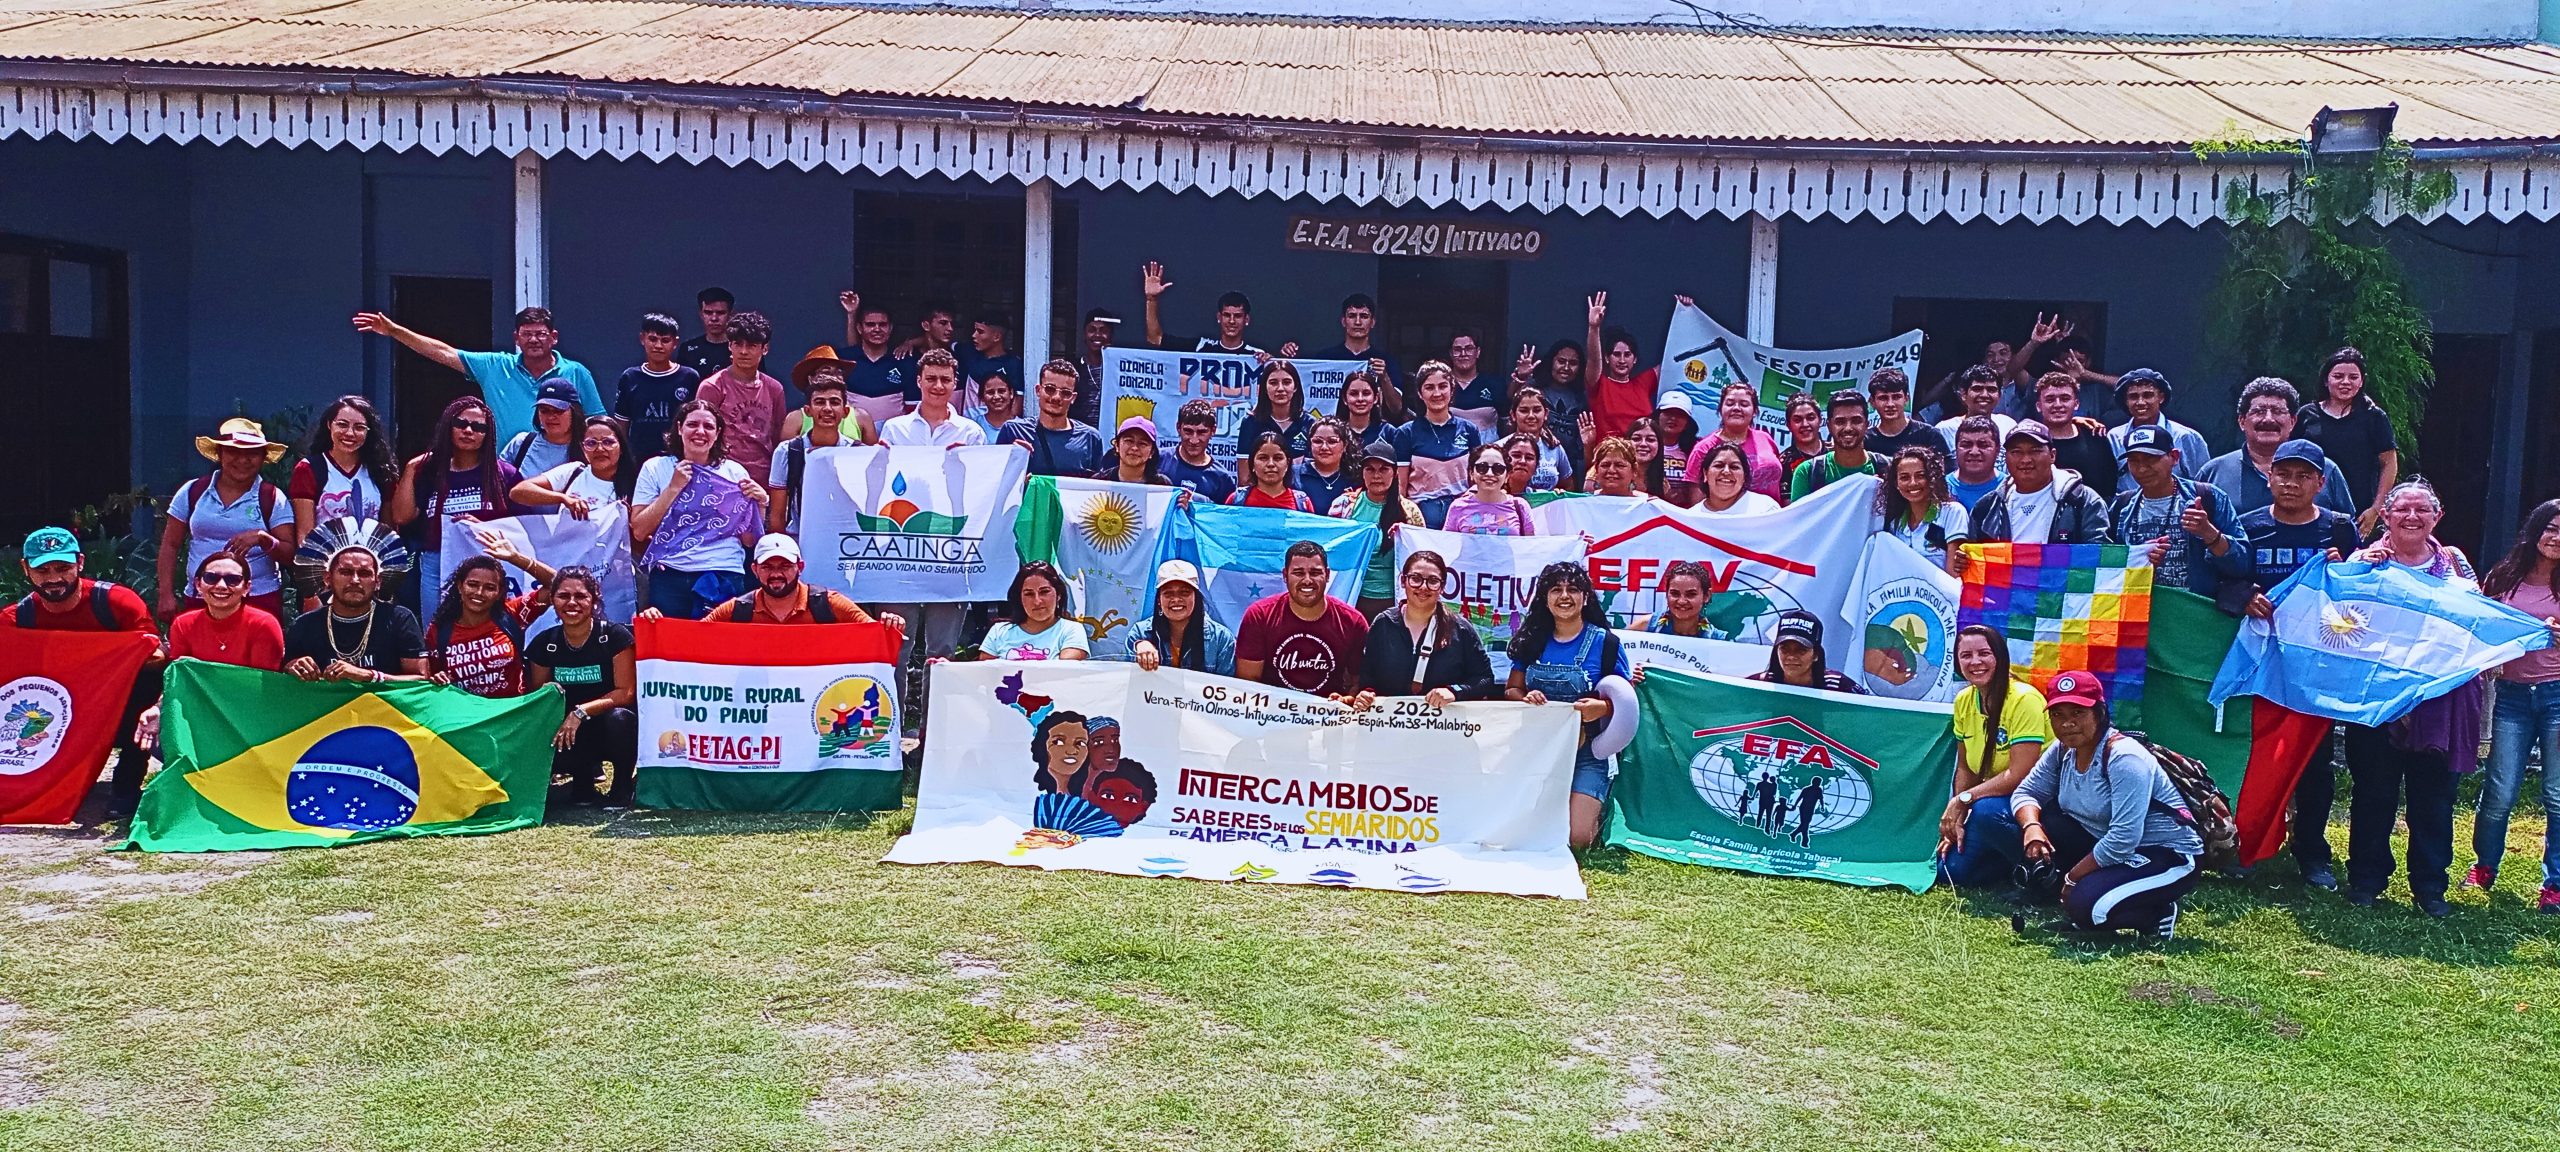 Juventudes dos semiáridos latino-americanos lançam carta com reivindicações e propostas para um futuro agroecológico